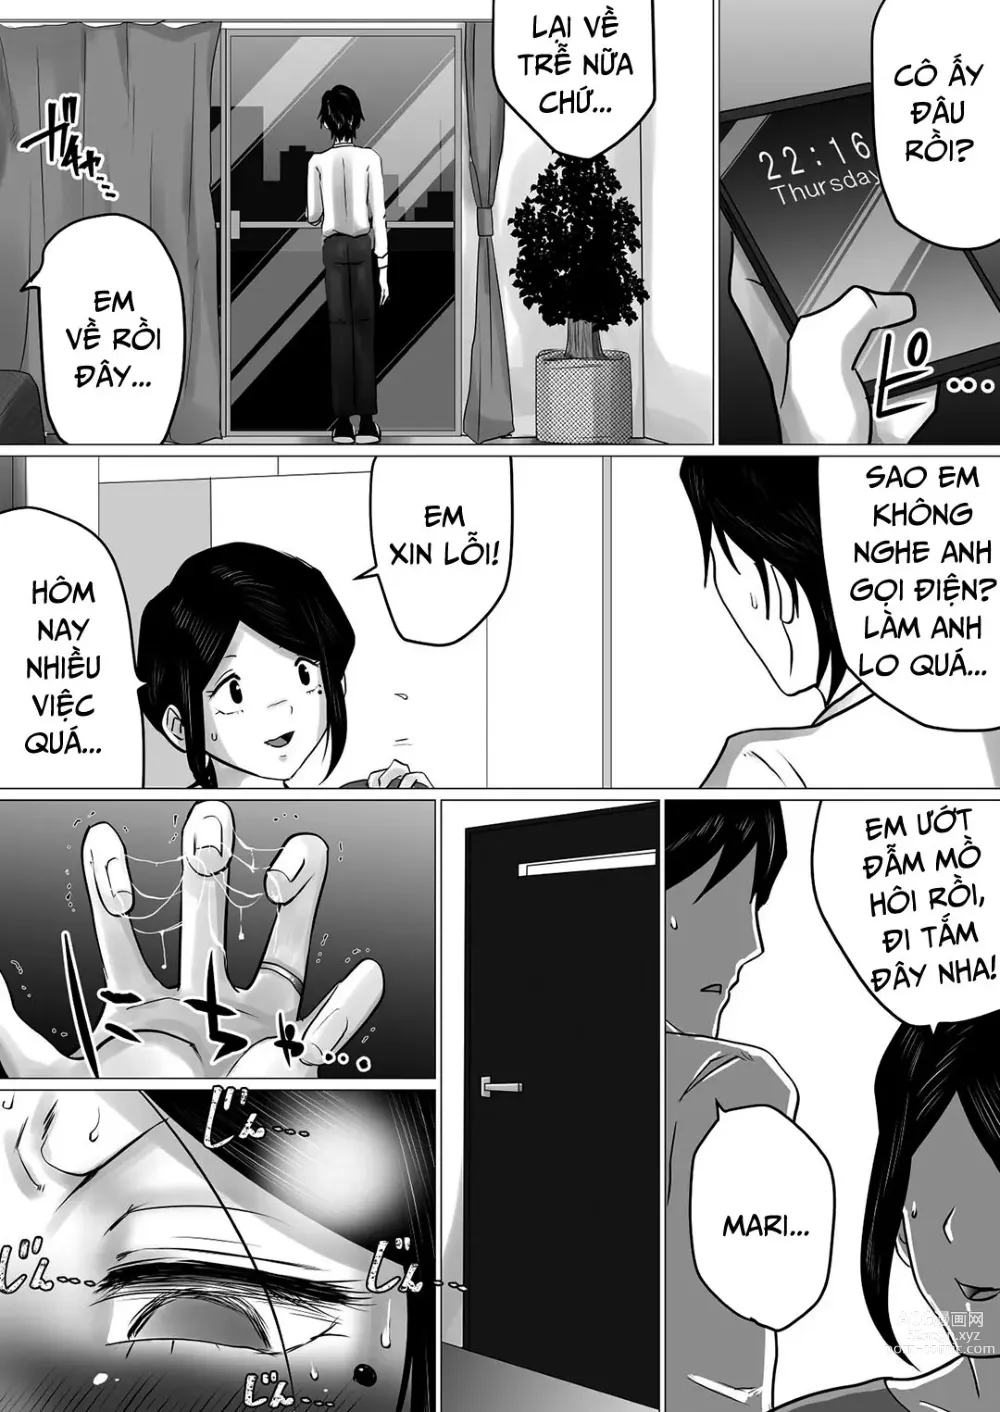 Page 54 of doujinshi Cô vợ kiêu ngạo bị lão sếp xấu xí khuất phục